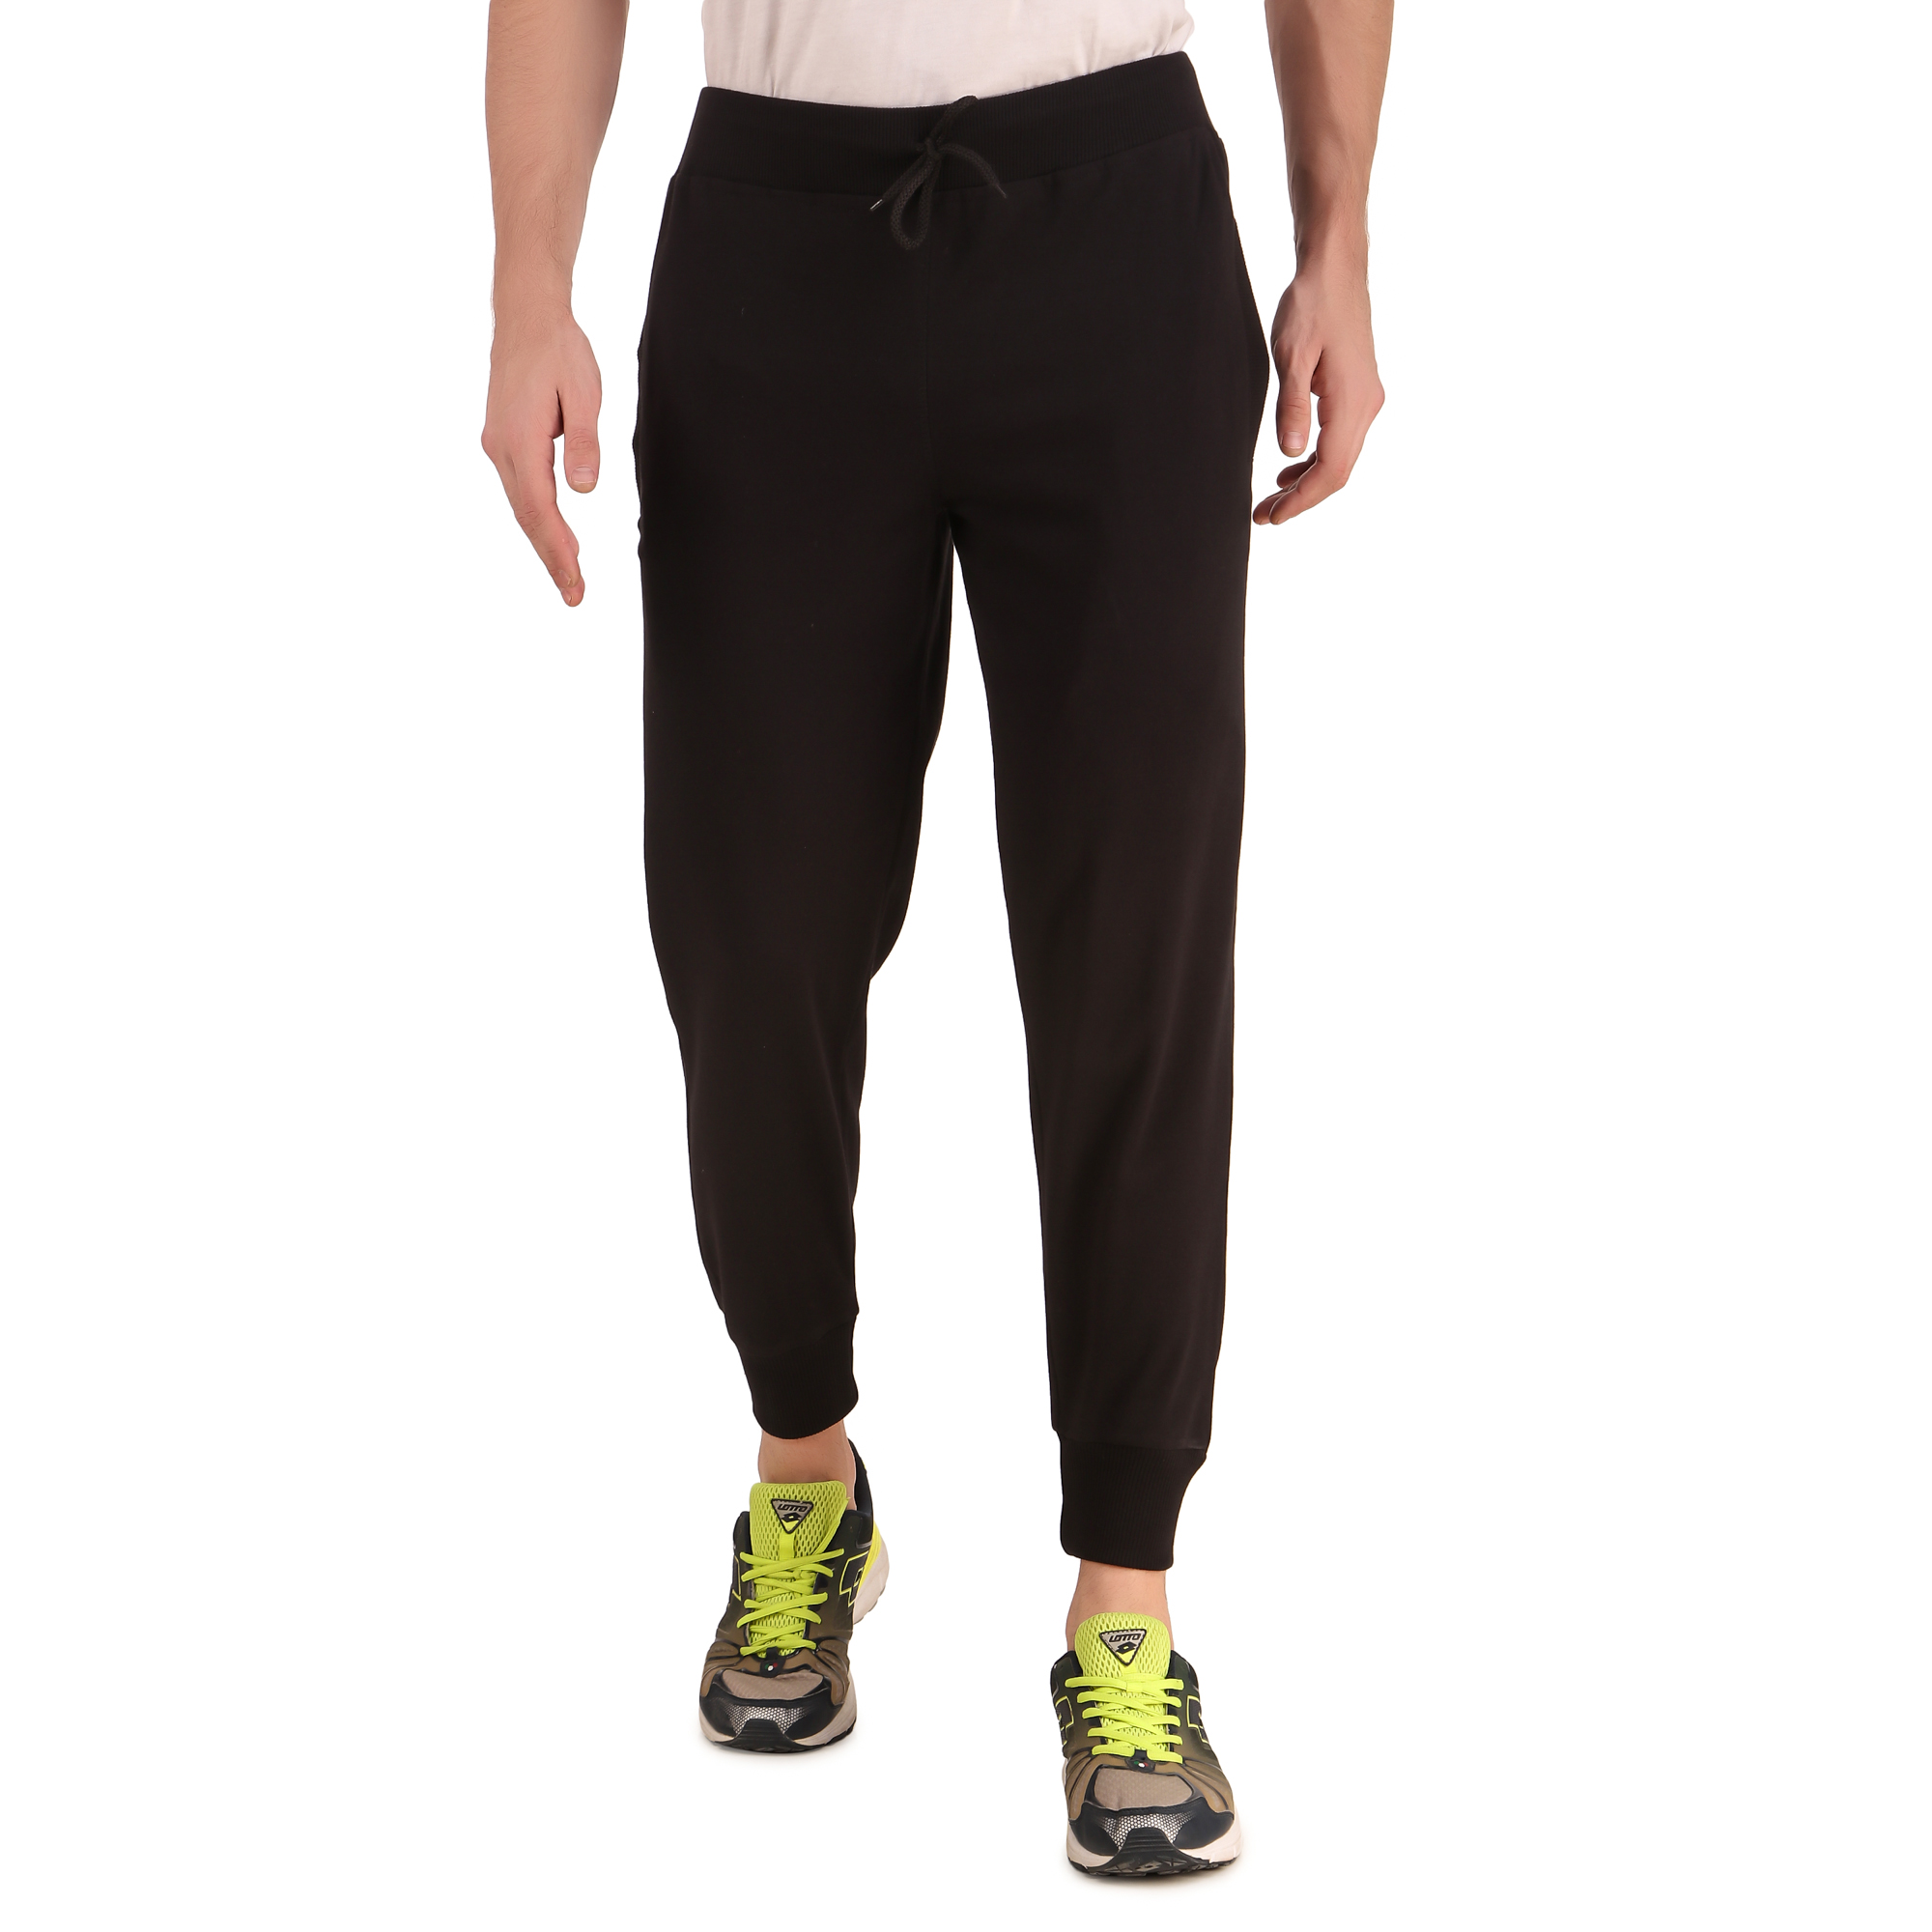 Cotton Track Pants for Men's (Black)